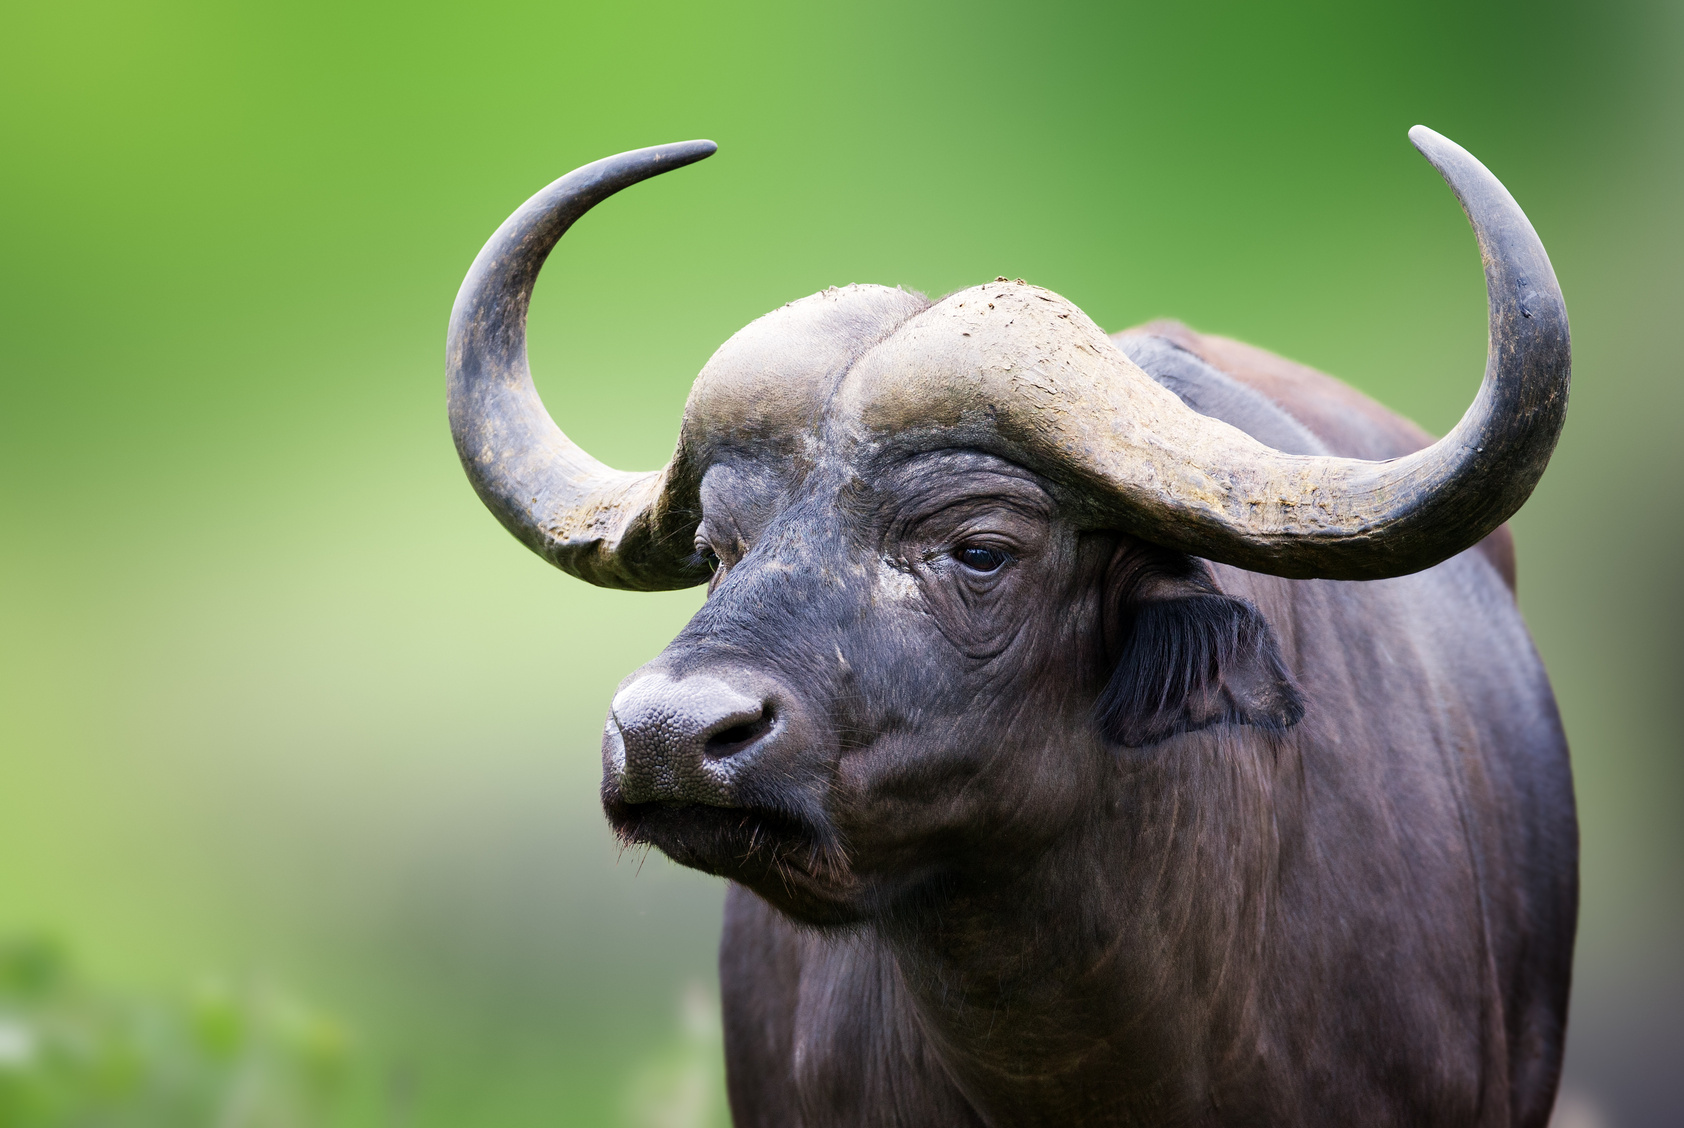 Italiani mangiatori di bufale, in troppi credono alle notizie false